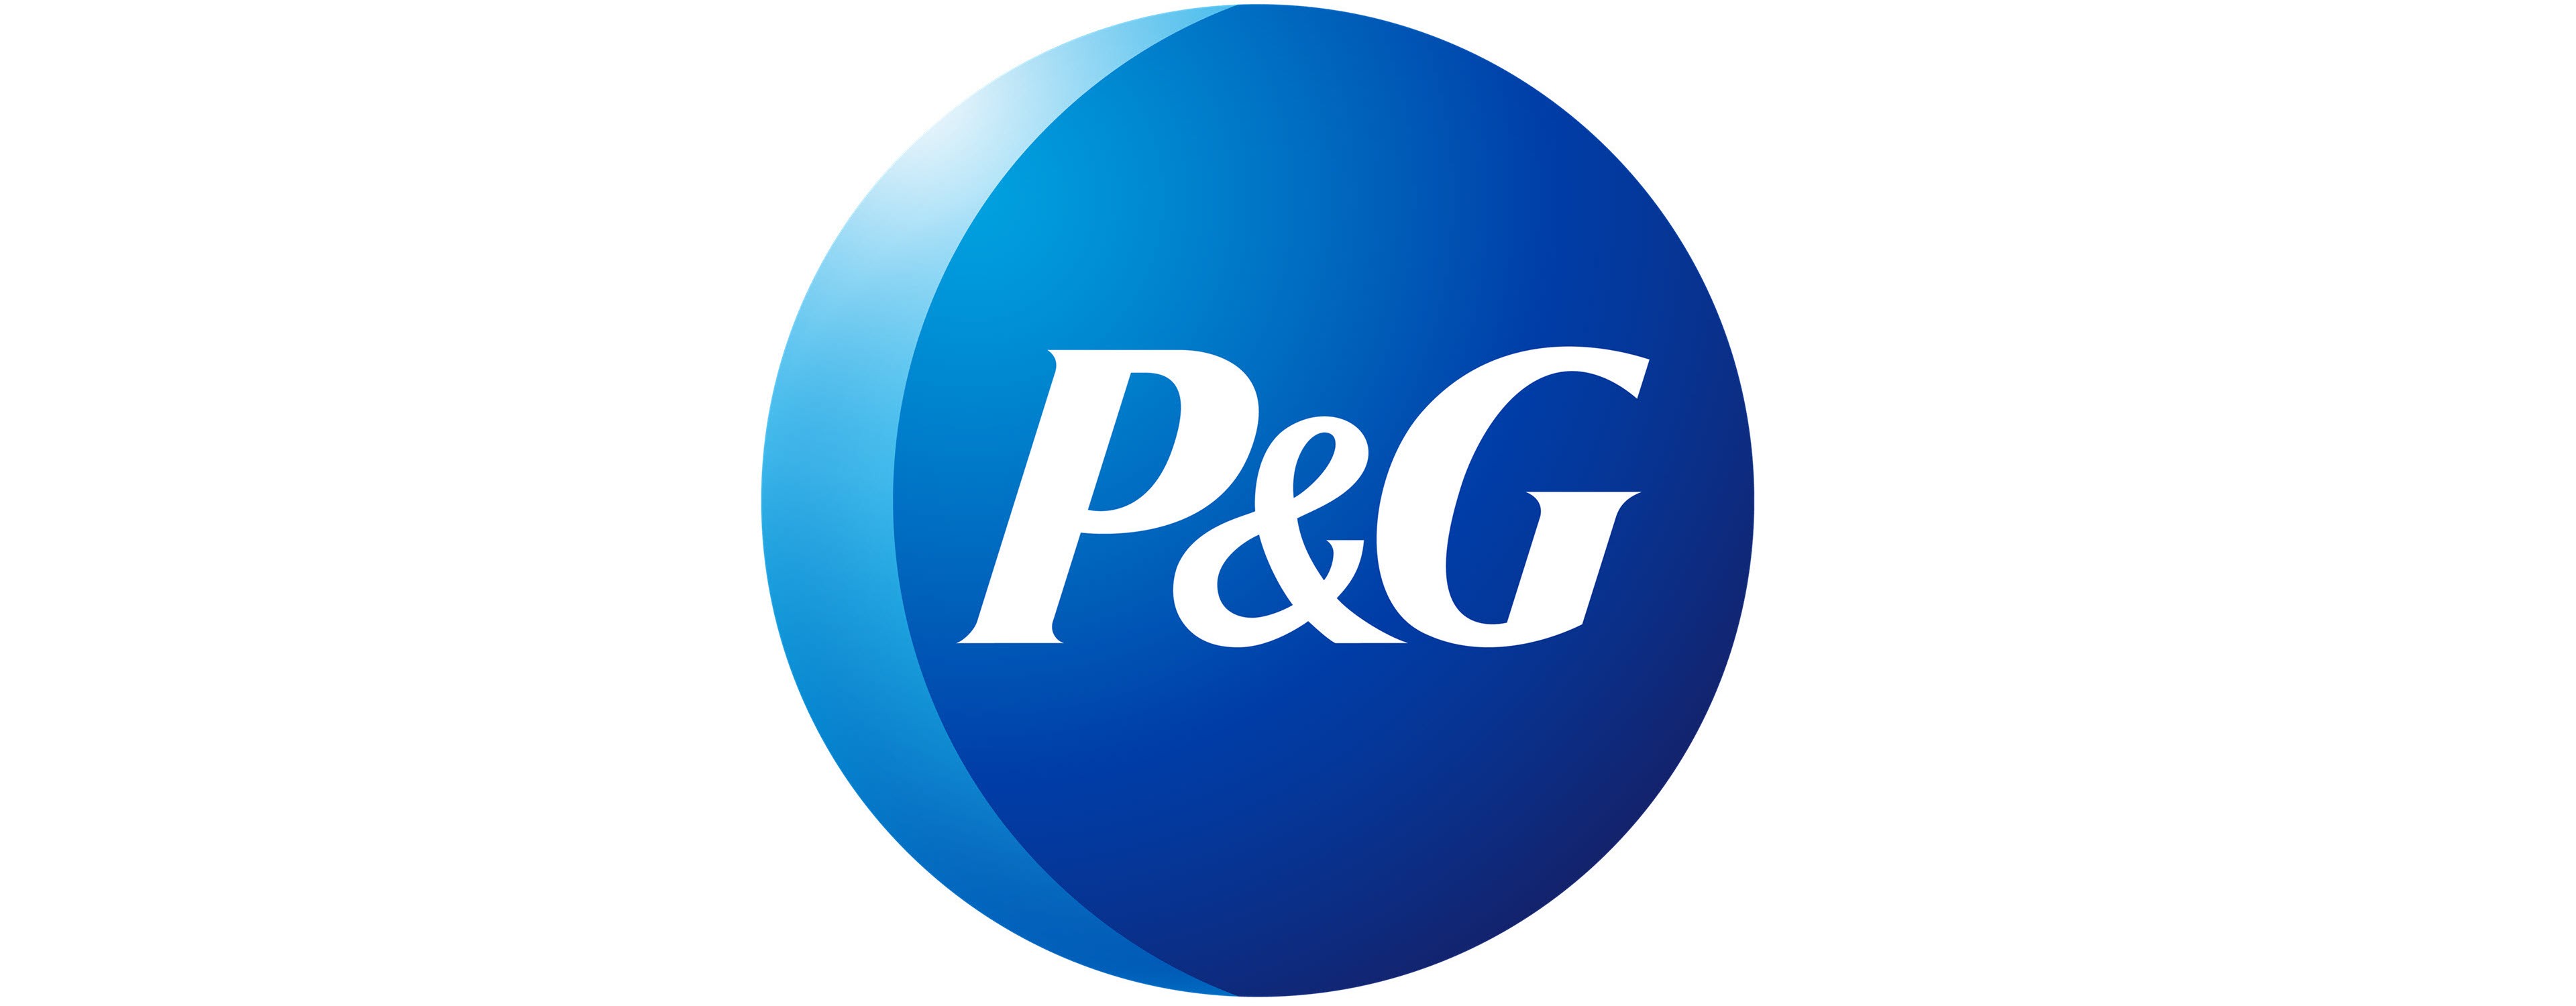             P&Gのロゴ        